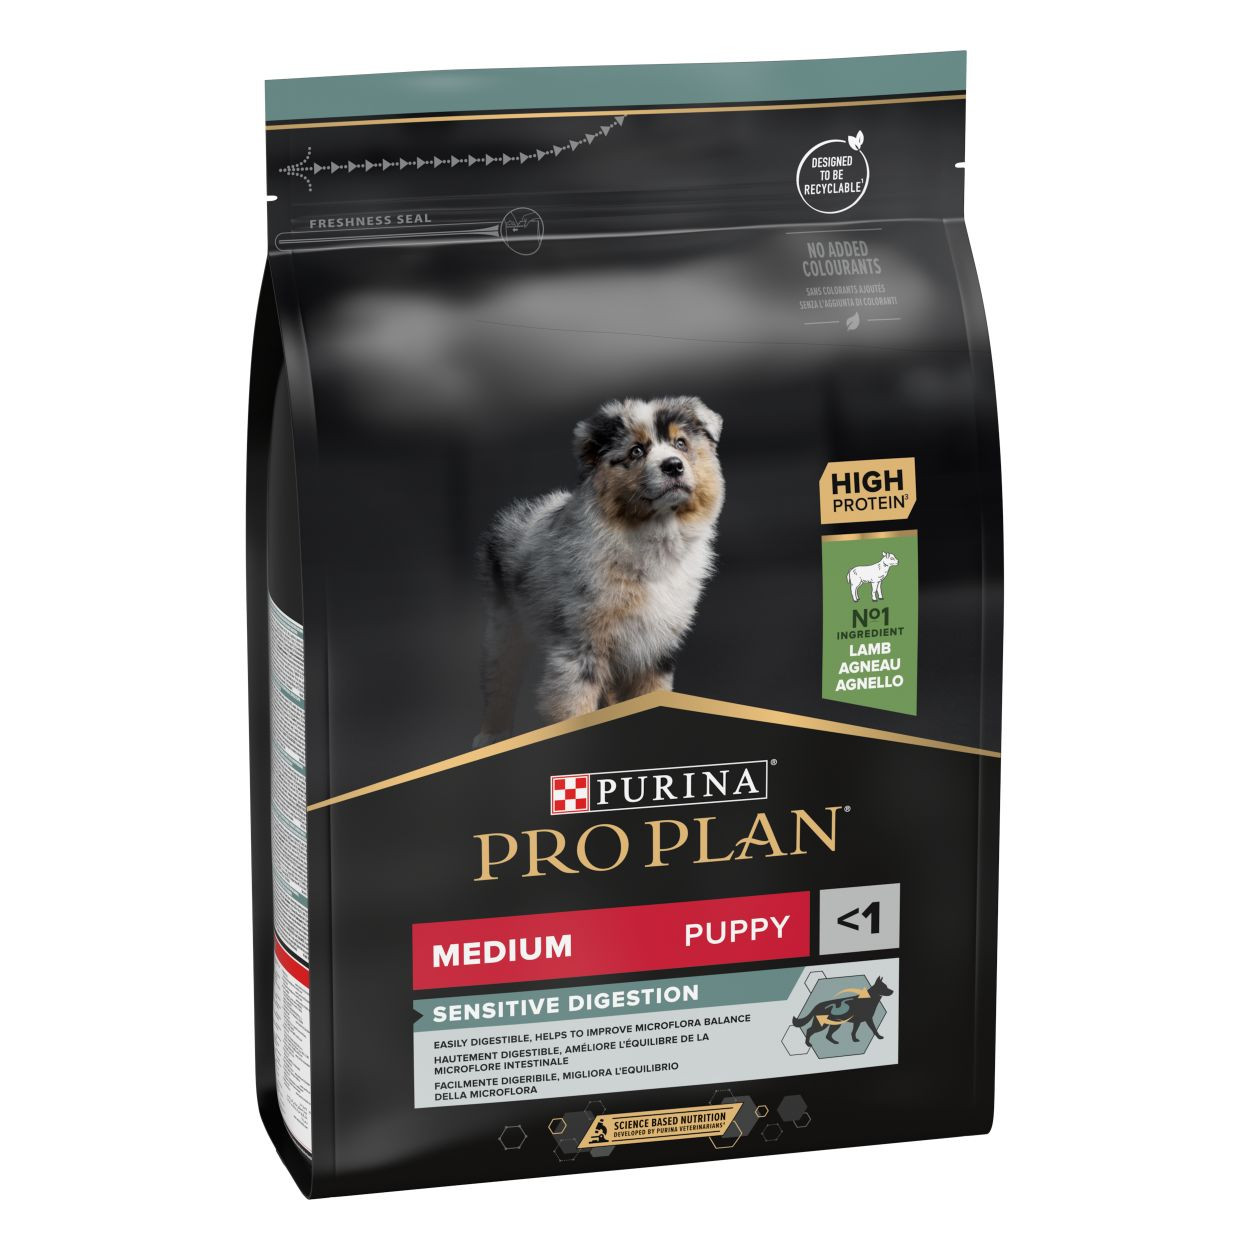 Pro Plan Medium Puppy Sensitive Digestion met lam hondenvoer